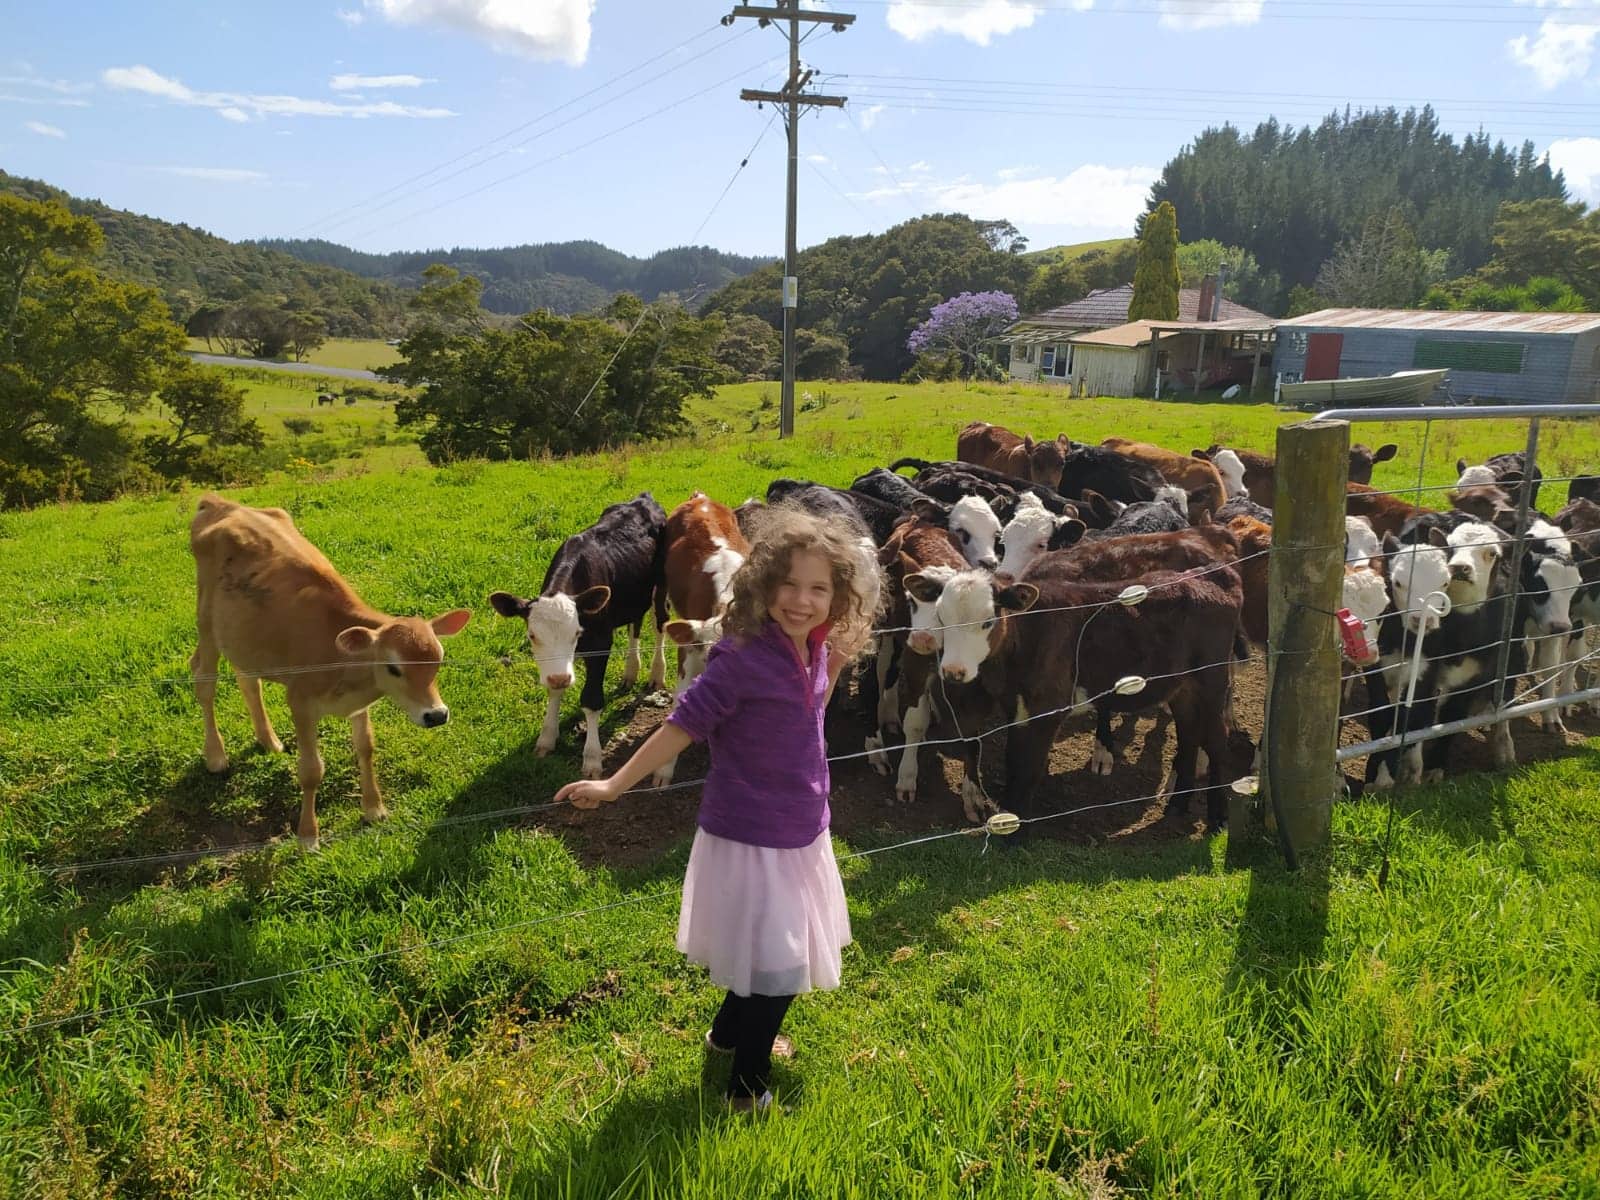 חוות הבידוד בניו זילנד (צילום: באדיבות המצולמים)